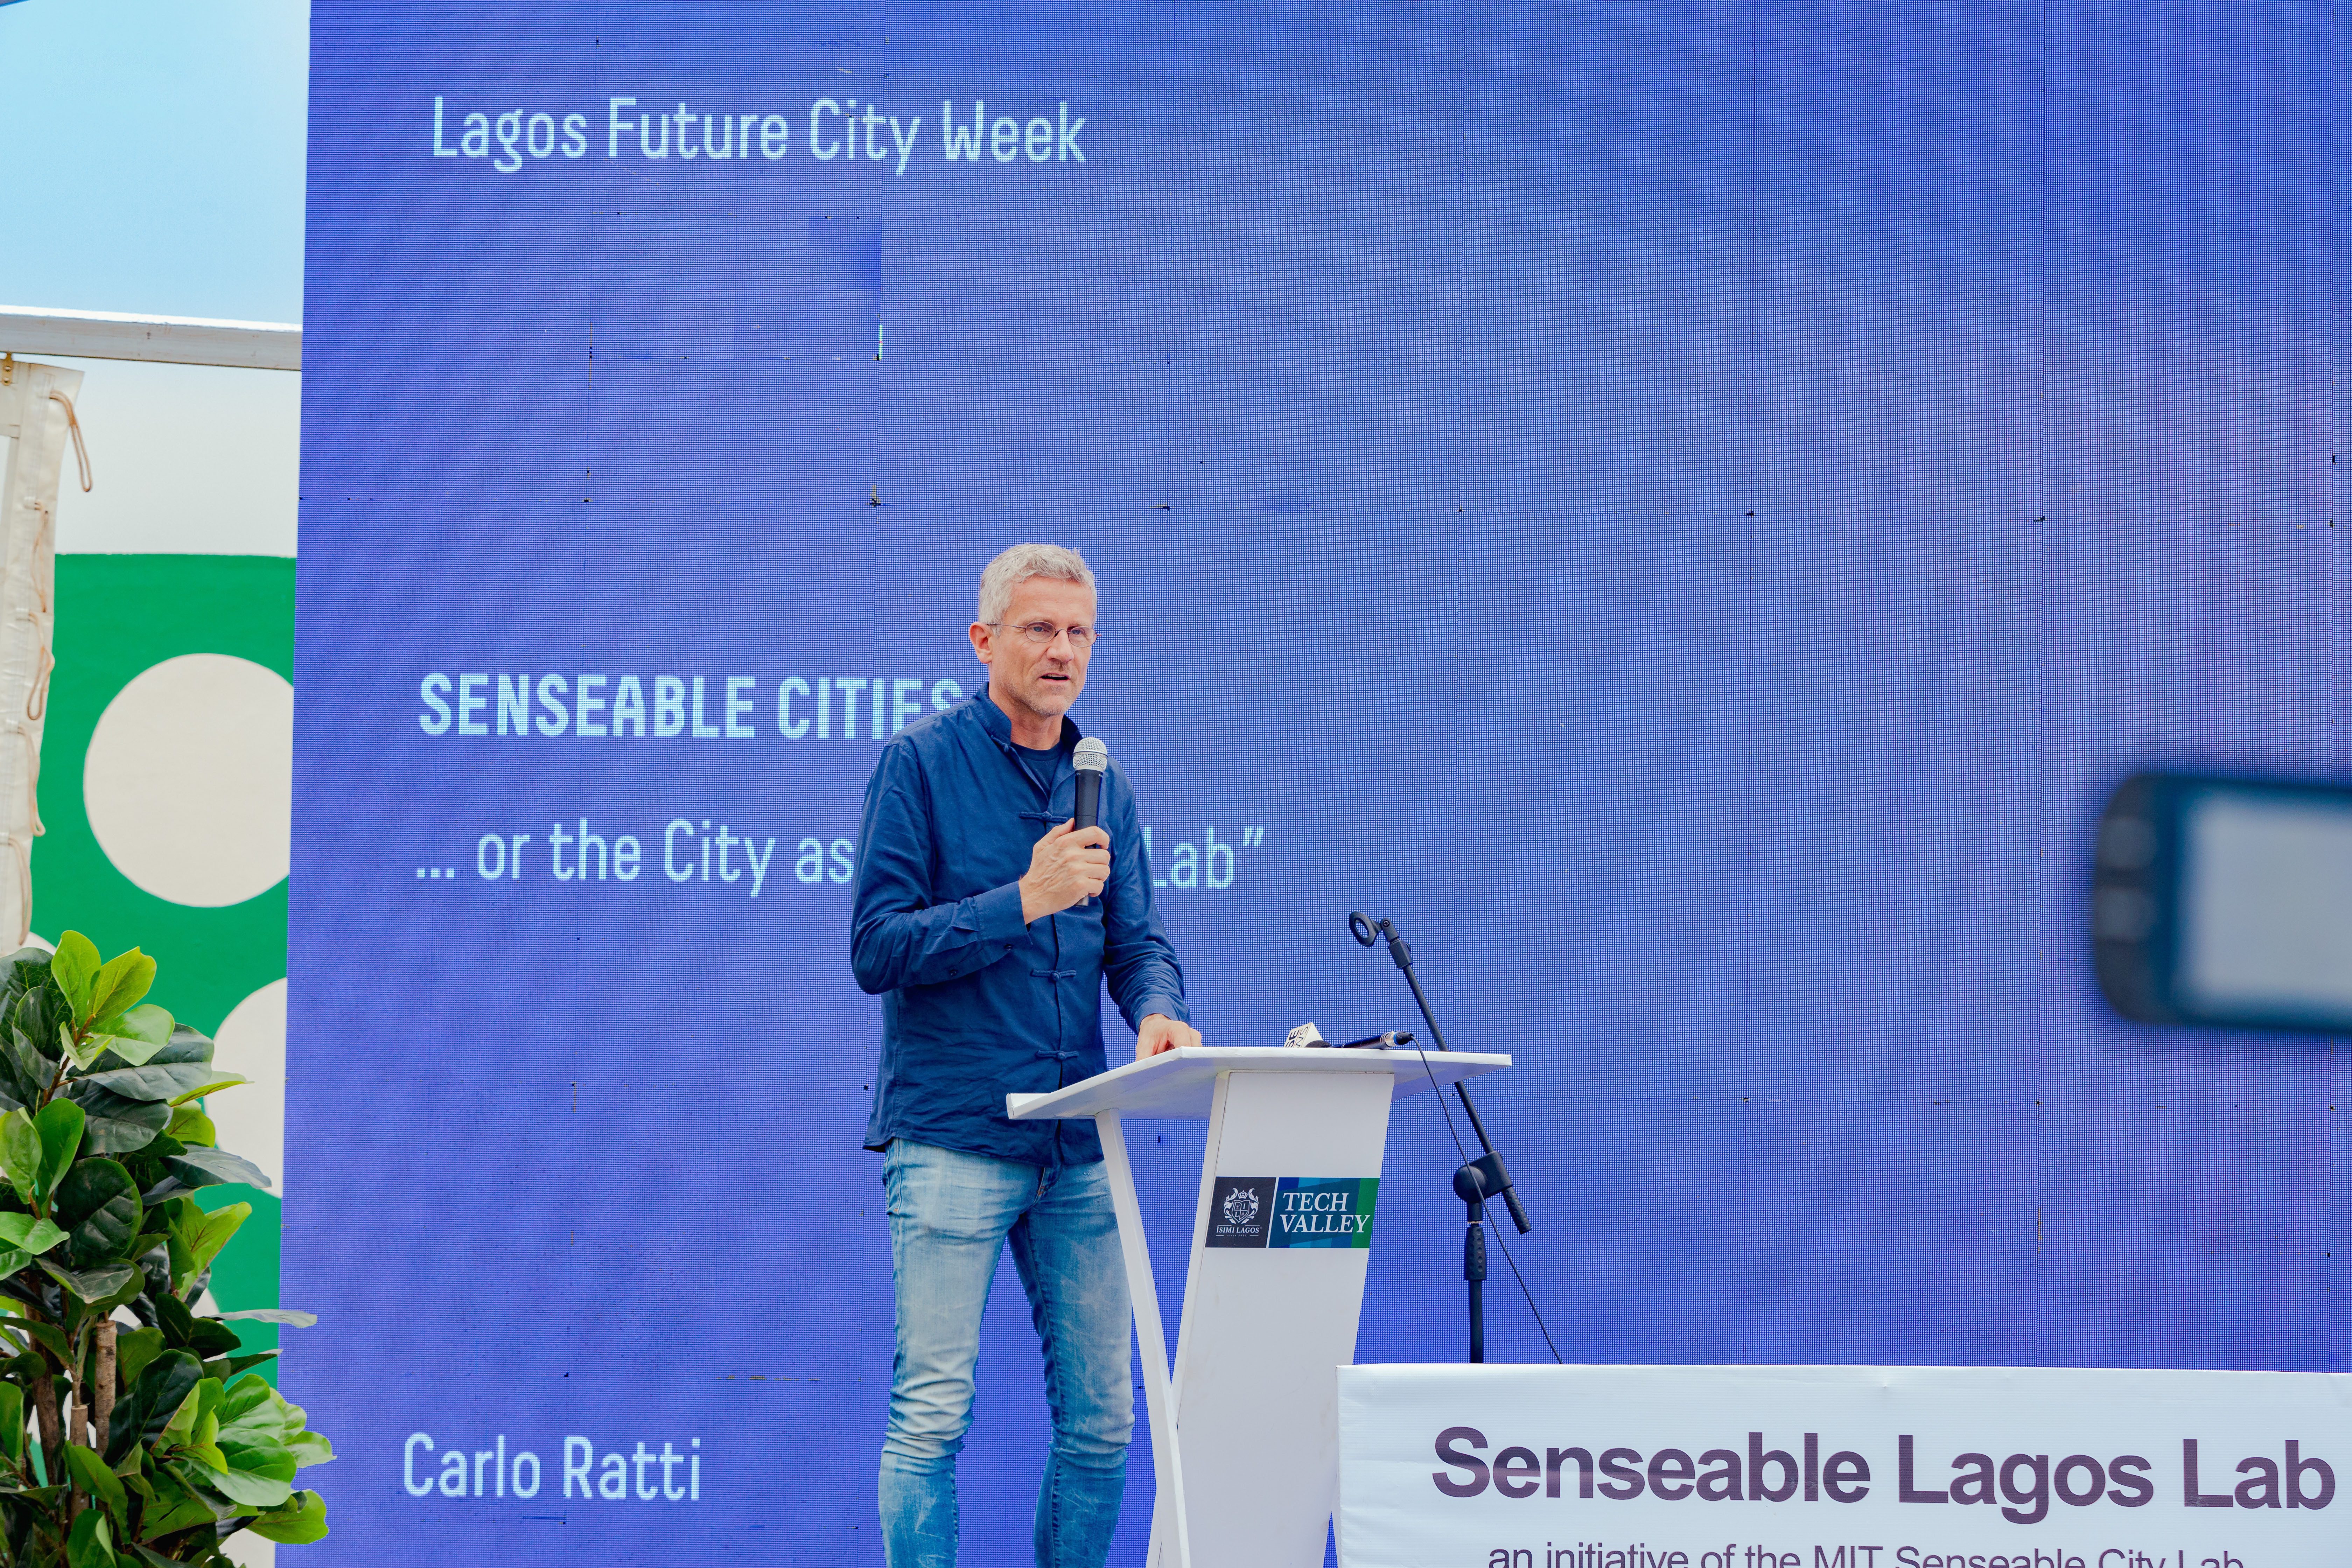 MIT Senseable Lagos